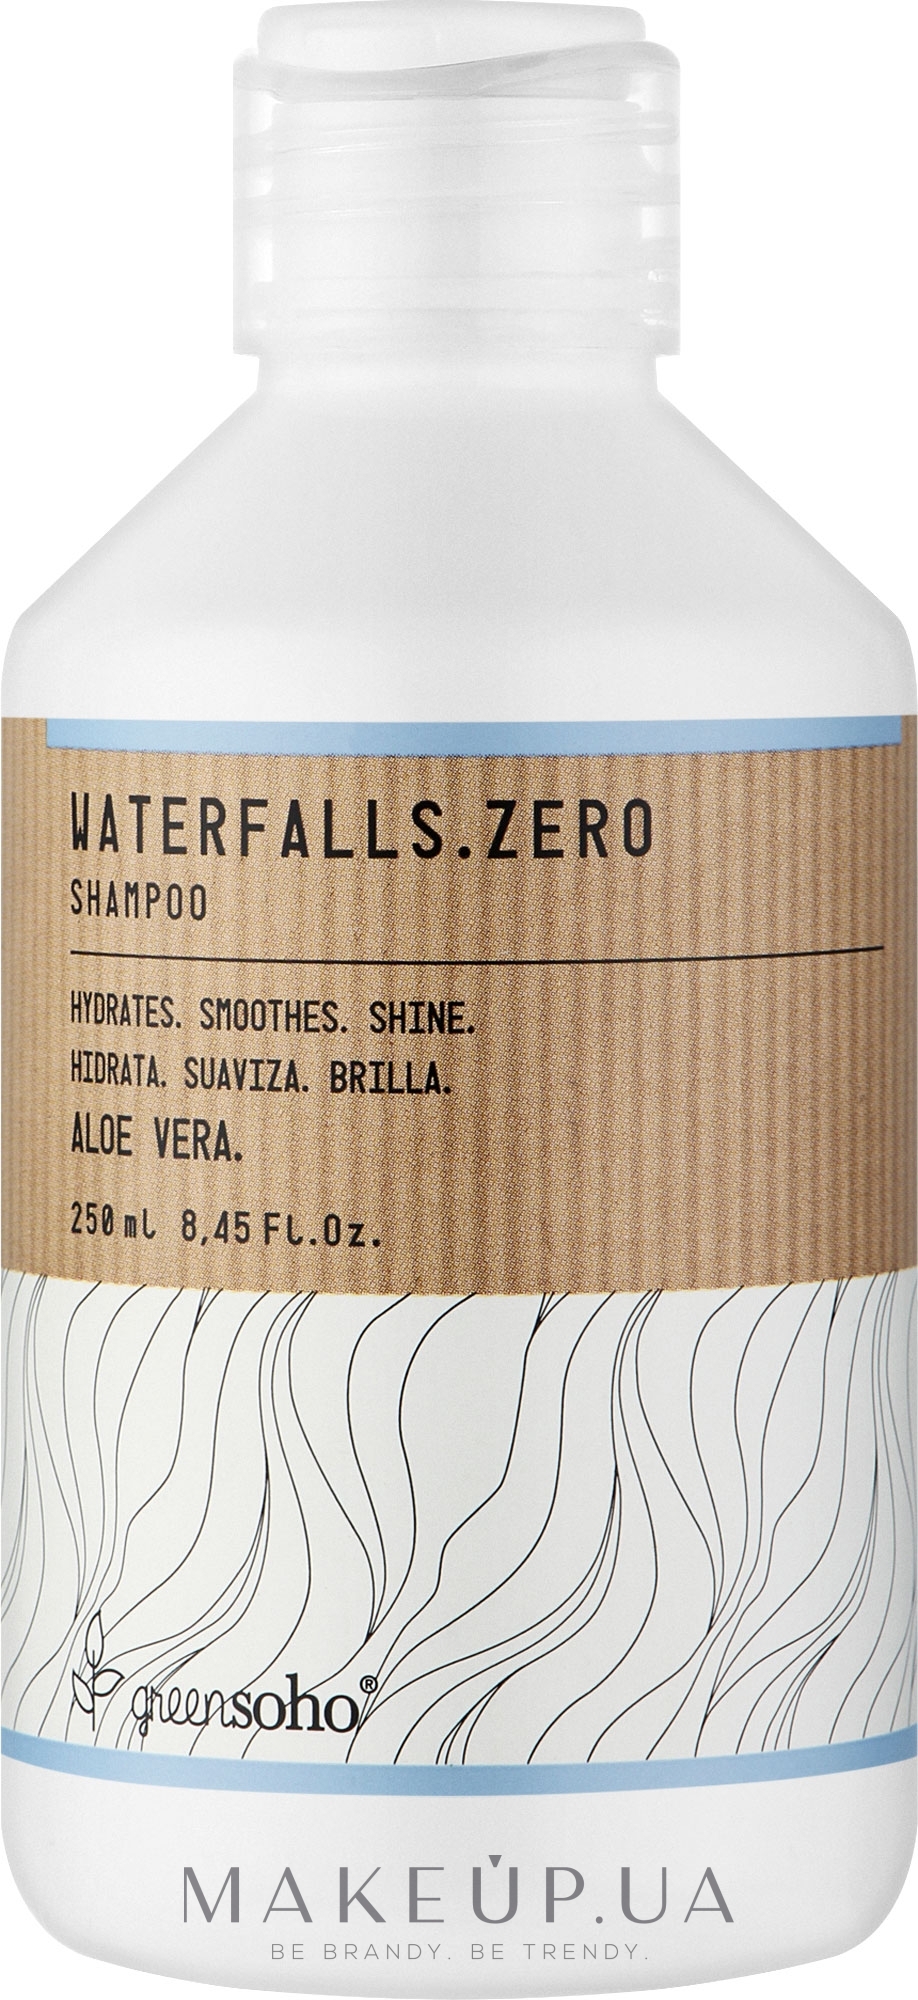 Зволожуючий шампунь для волосся - GreenSoho Waterfalls.Zero Shampoo — фото 250ml